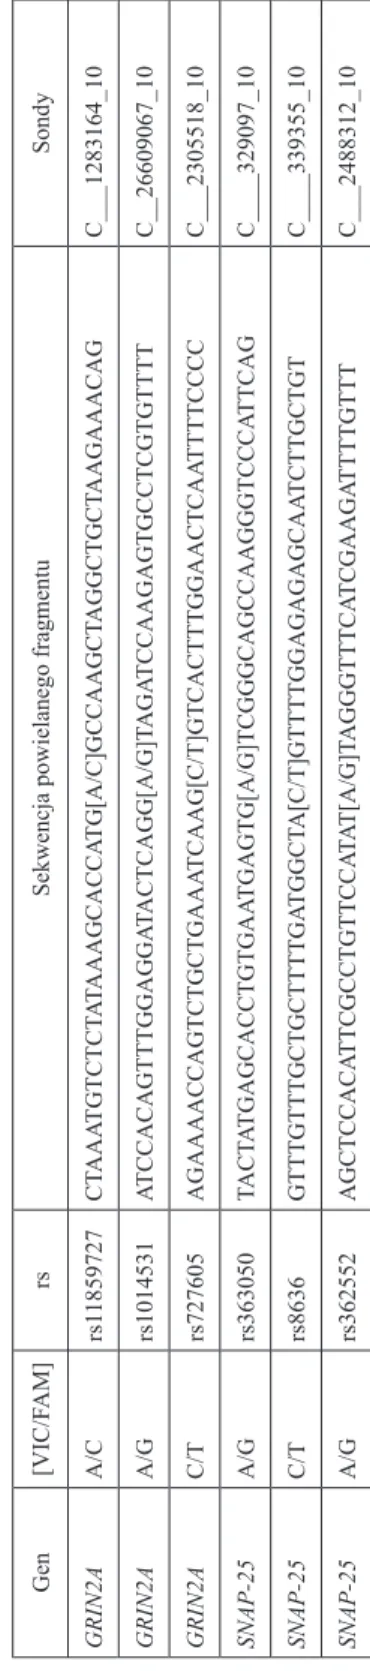 Tabela 3. Sondy firmy Applied Biosystems, powielane fragmenty DNA oraz barwniki fluorescencyjne dla poszczególnych alleli